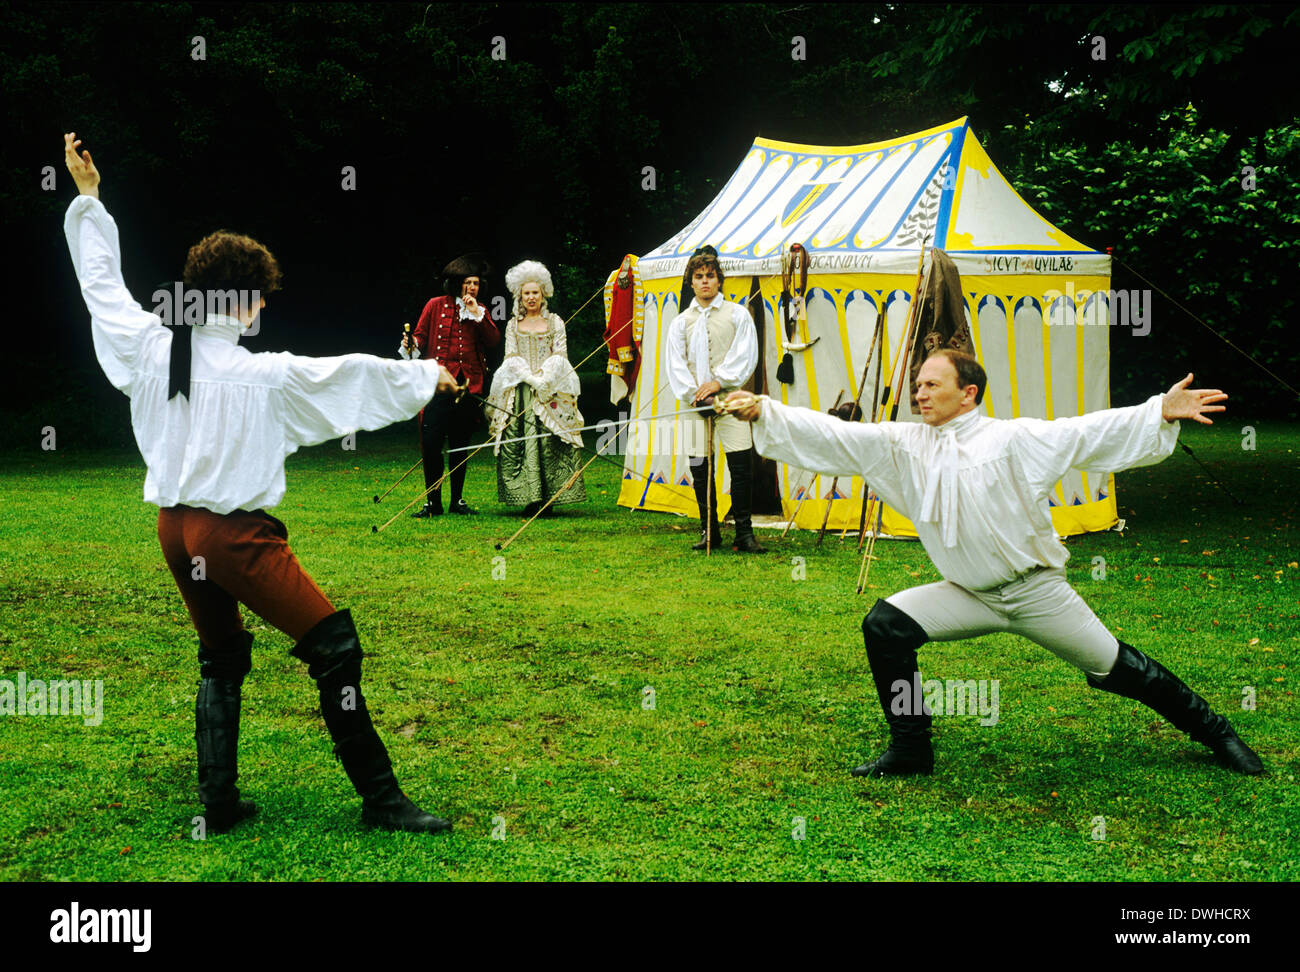 Période de Régence anglaise duellistes, début du xixe siècle, reconstitution historique, duel d'épées England UK duellistes duelliste Banque D'Images